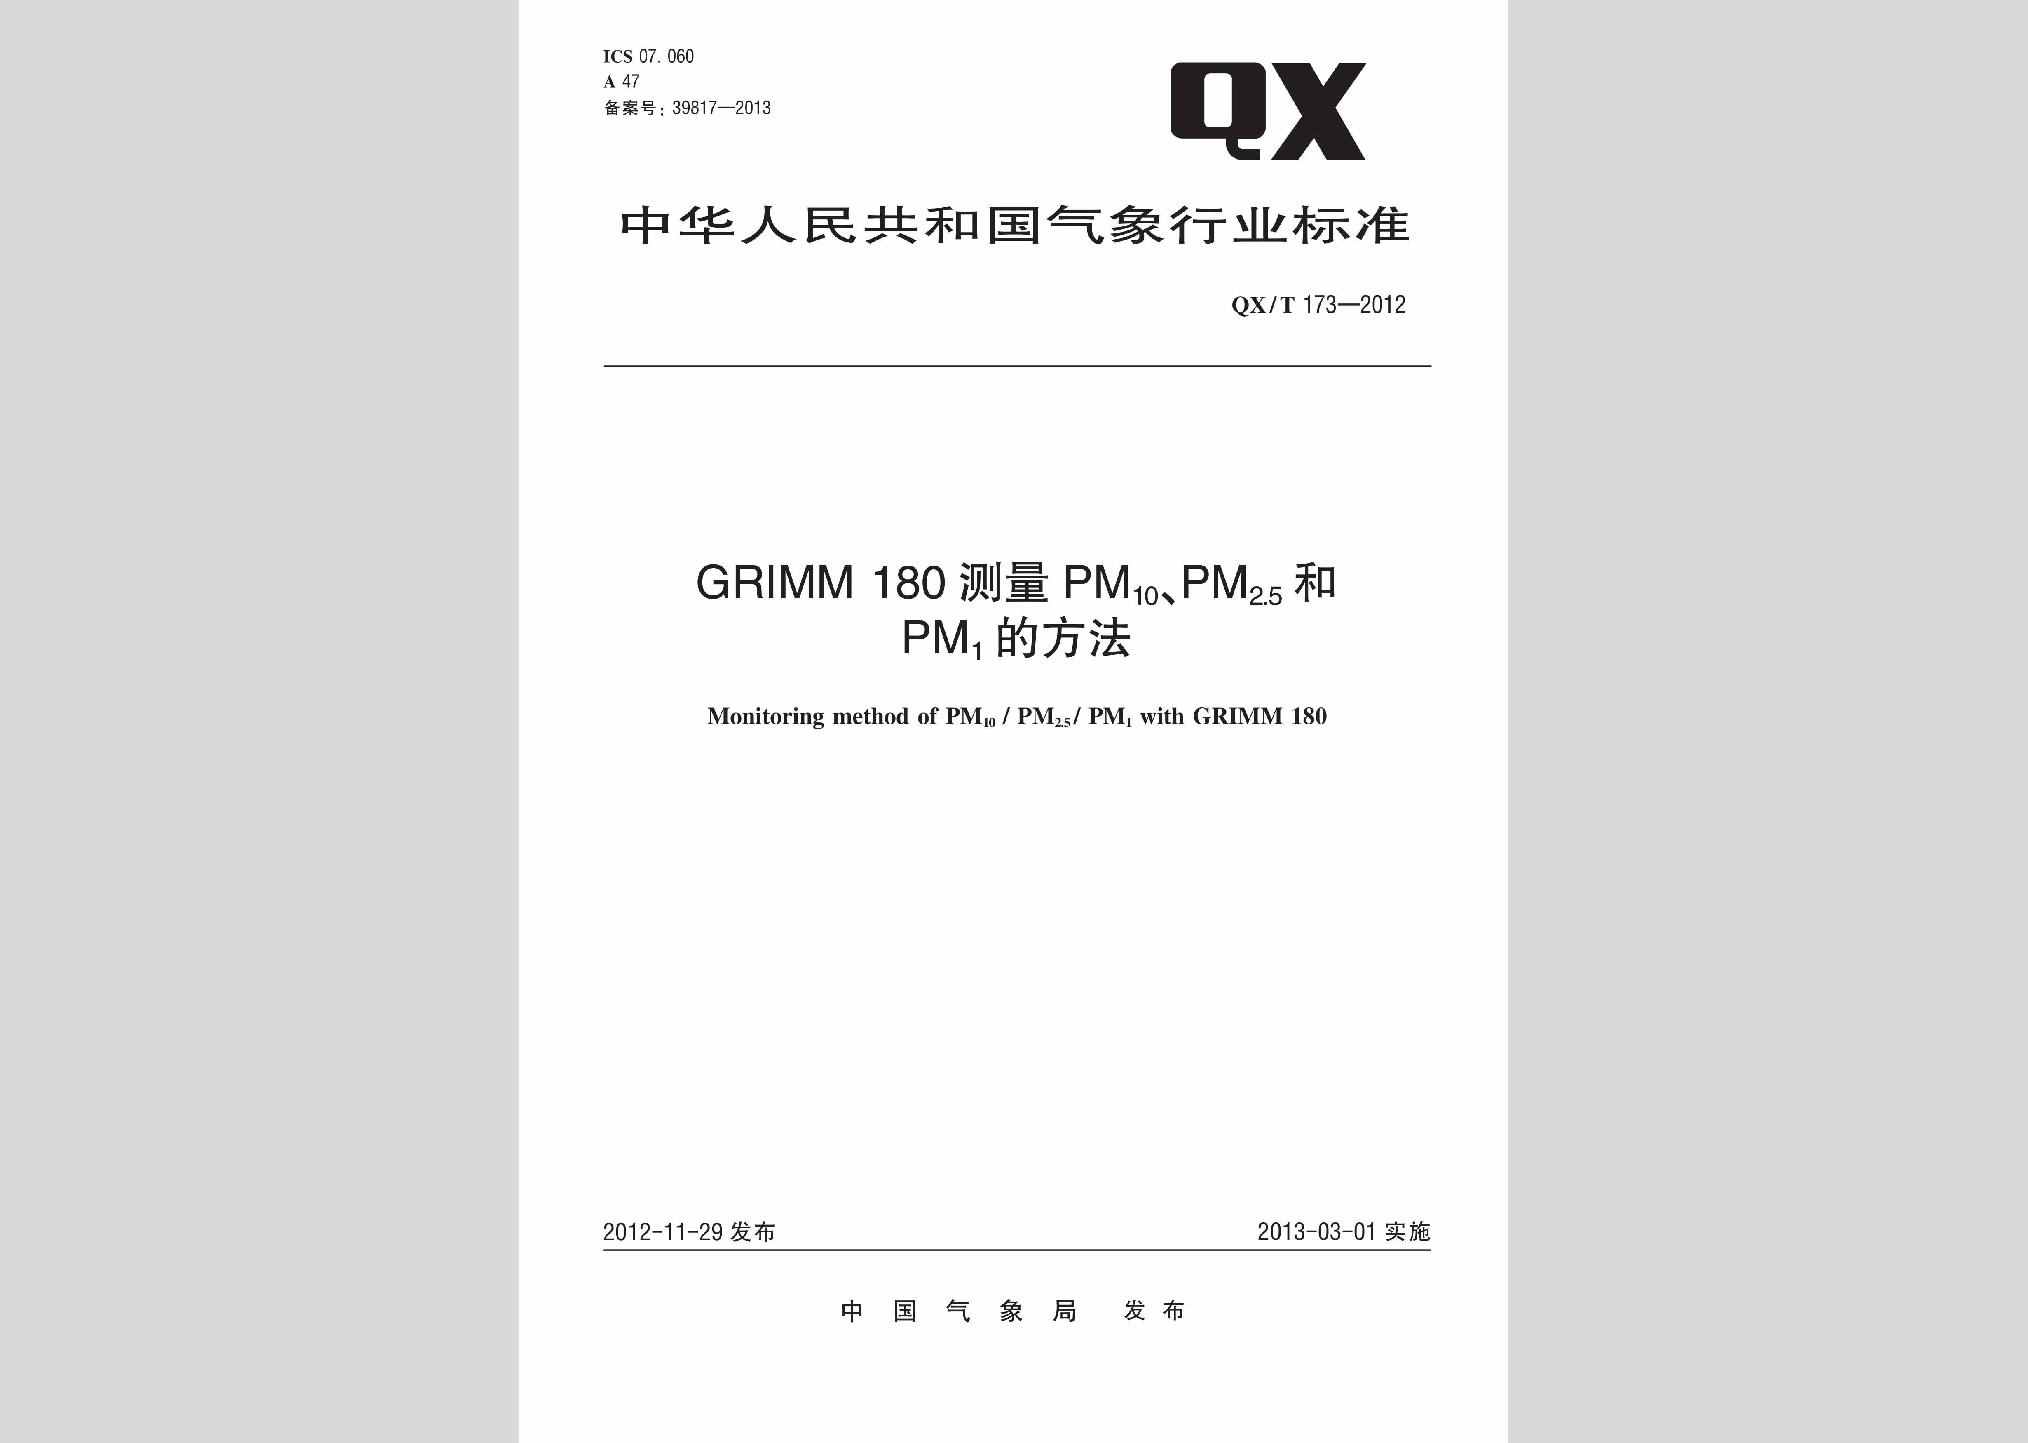 QX/T173-2012：GRIMM180测量PM10、PM2.5和PM1的方法